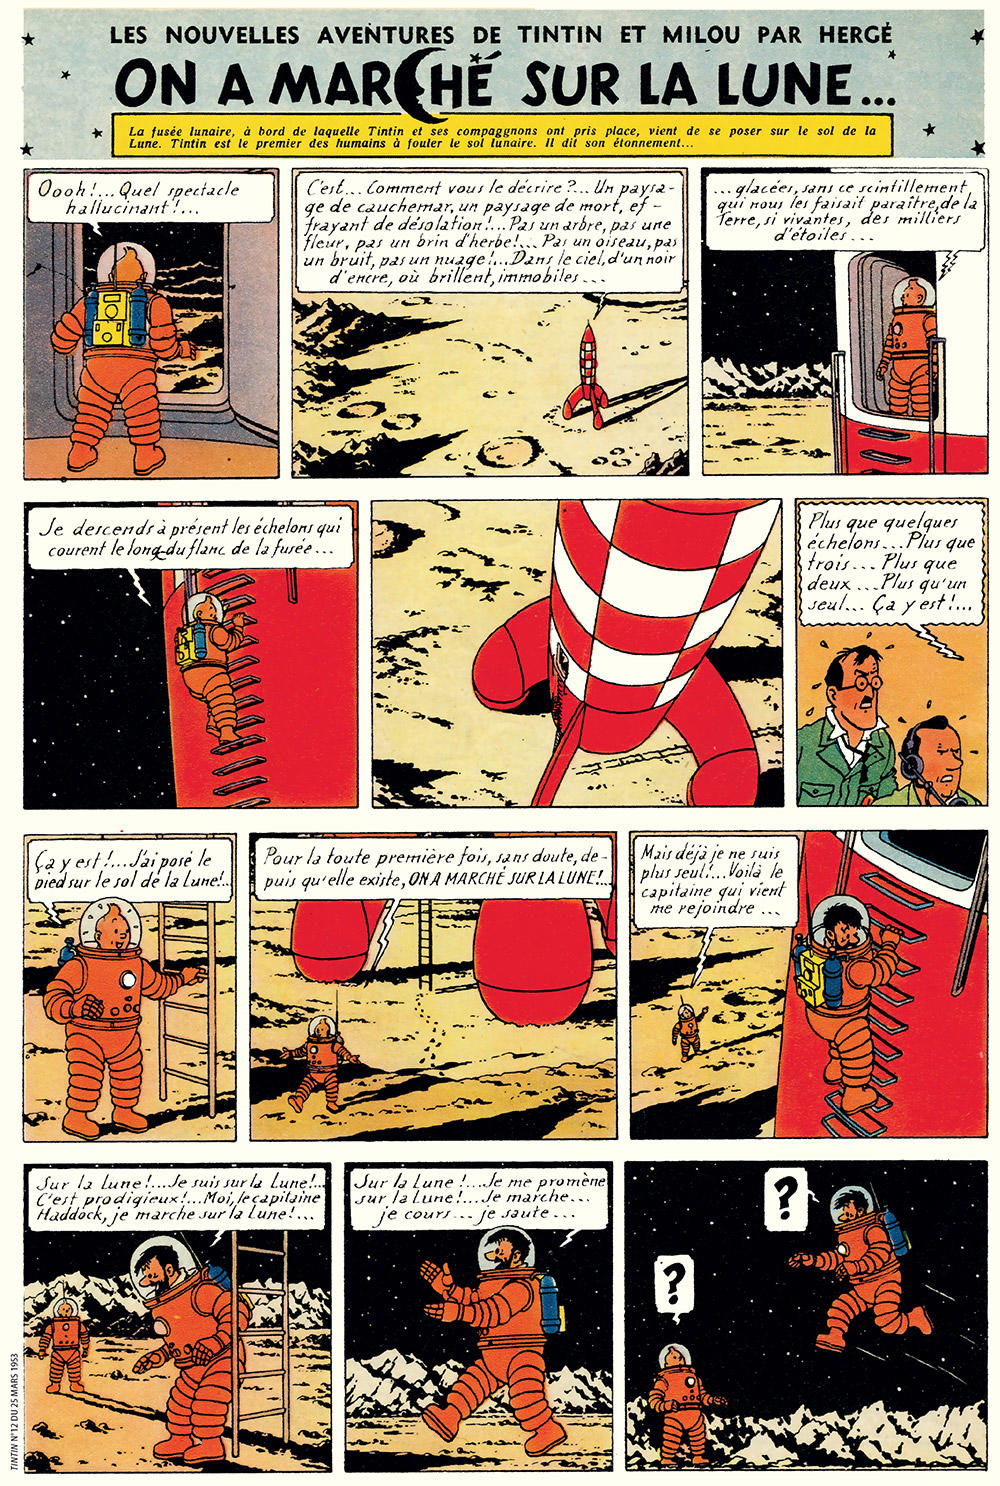 [Artemis] HLS - SpaceX - Moon Starship - Page 21 Herge%CC%81-4-Tintin-les-premiers-pas-sur-la-Lune-Amazonie-BD